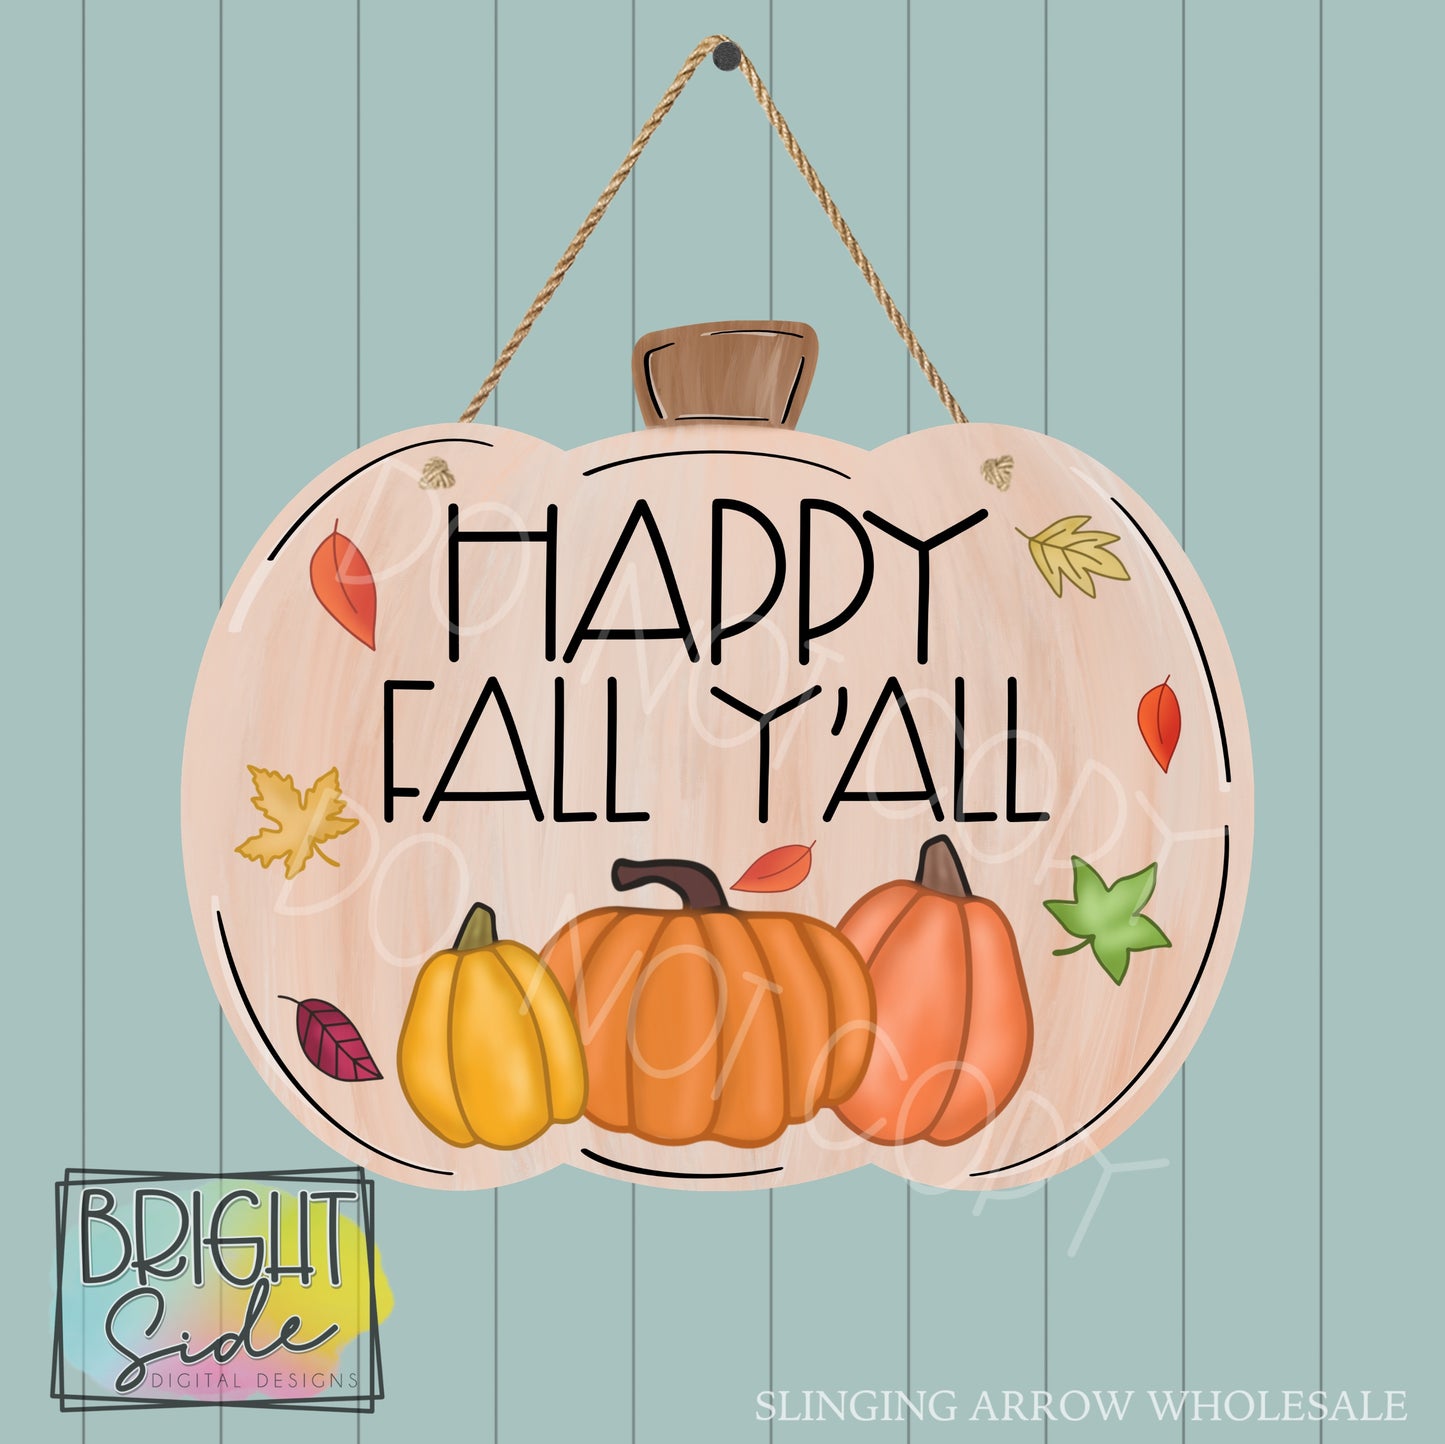 Happy Fall Y’all Pumpkin